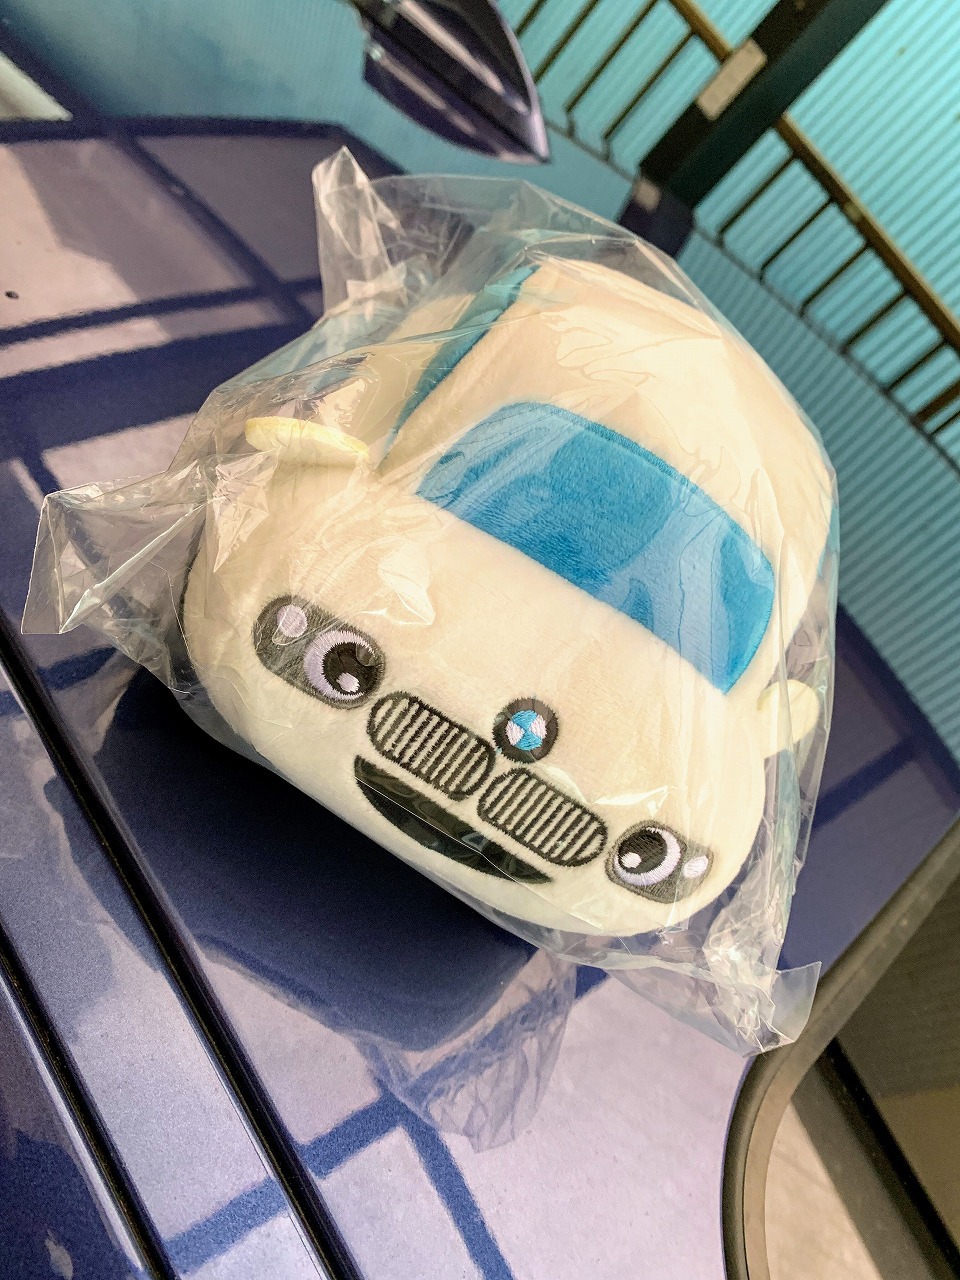 BMWを擬人化した可愛いオリジナルマスコットぬいぐるみのノベルティをMyディーラーで頂きました＾＾